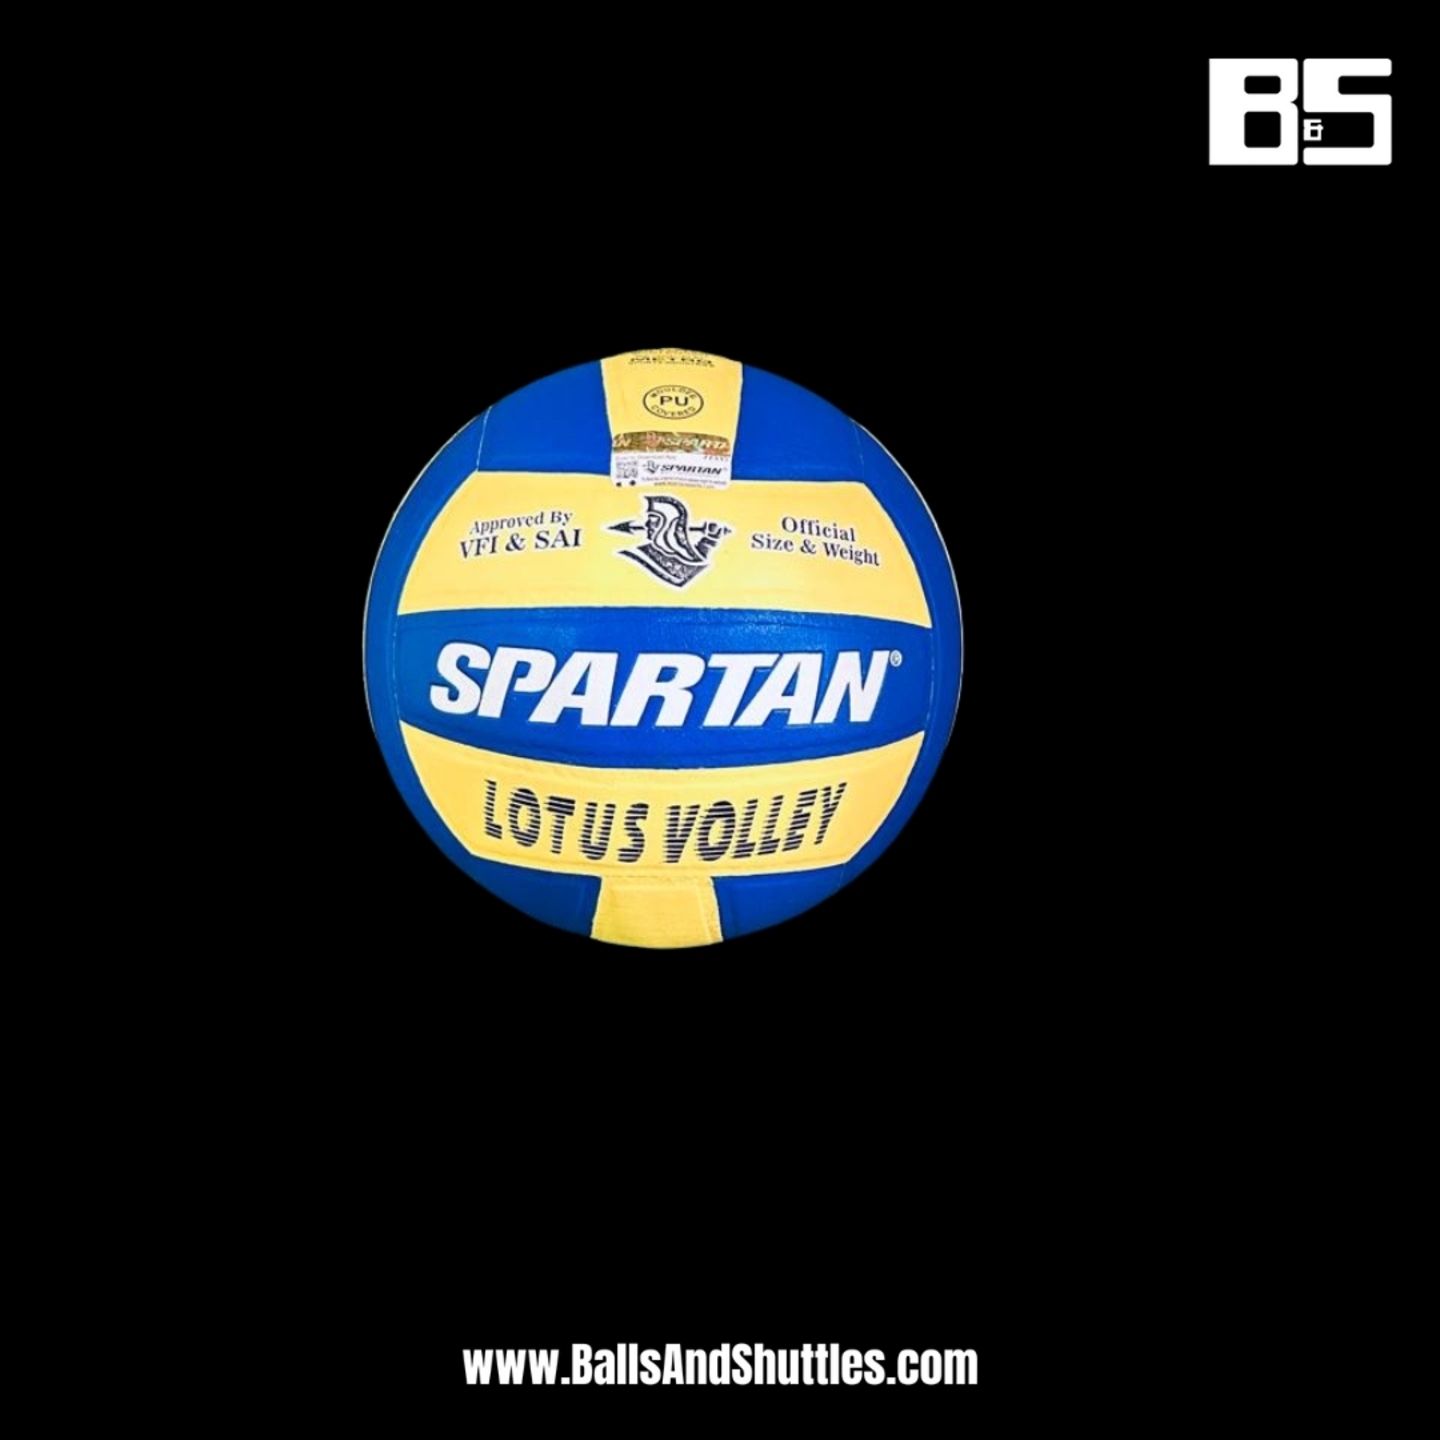 SPARTAN LOTUS VOLLEY VOLLEYBALL | SPARTAN SIZE 4 VOLLEYBALL | SPARTAN VOLLEYBALL